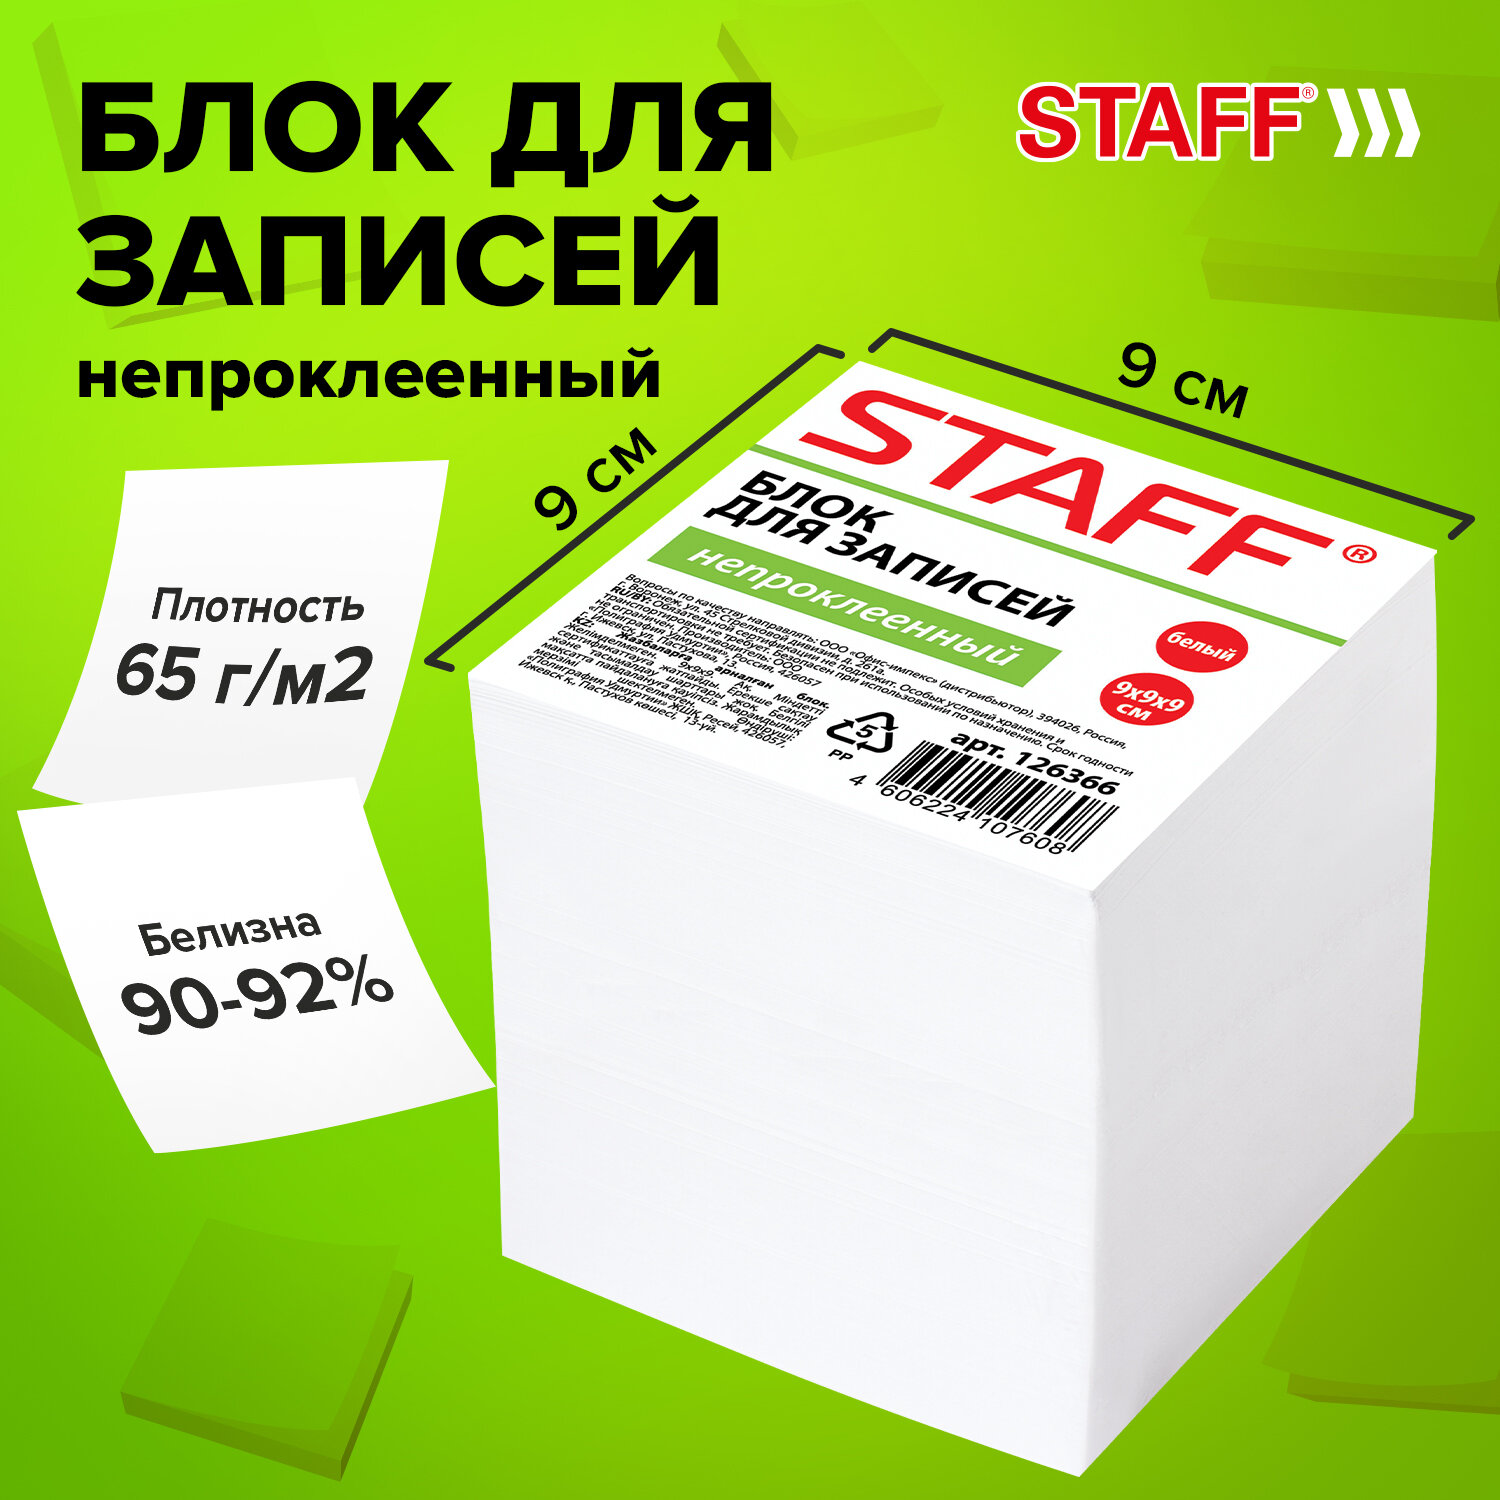  STAFF 126366,  9 .